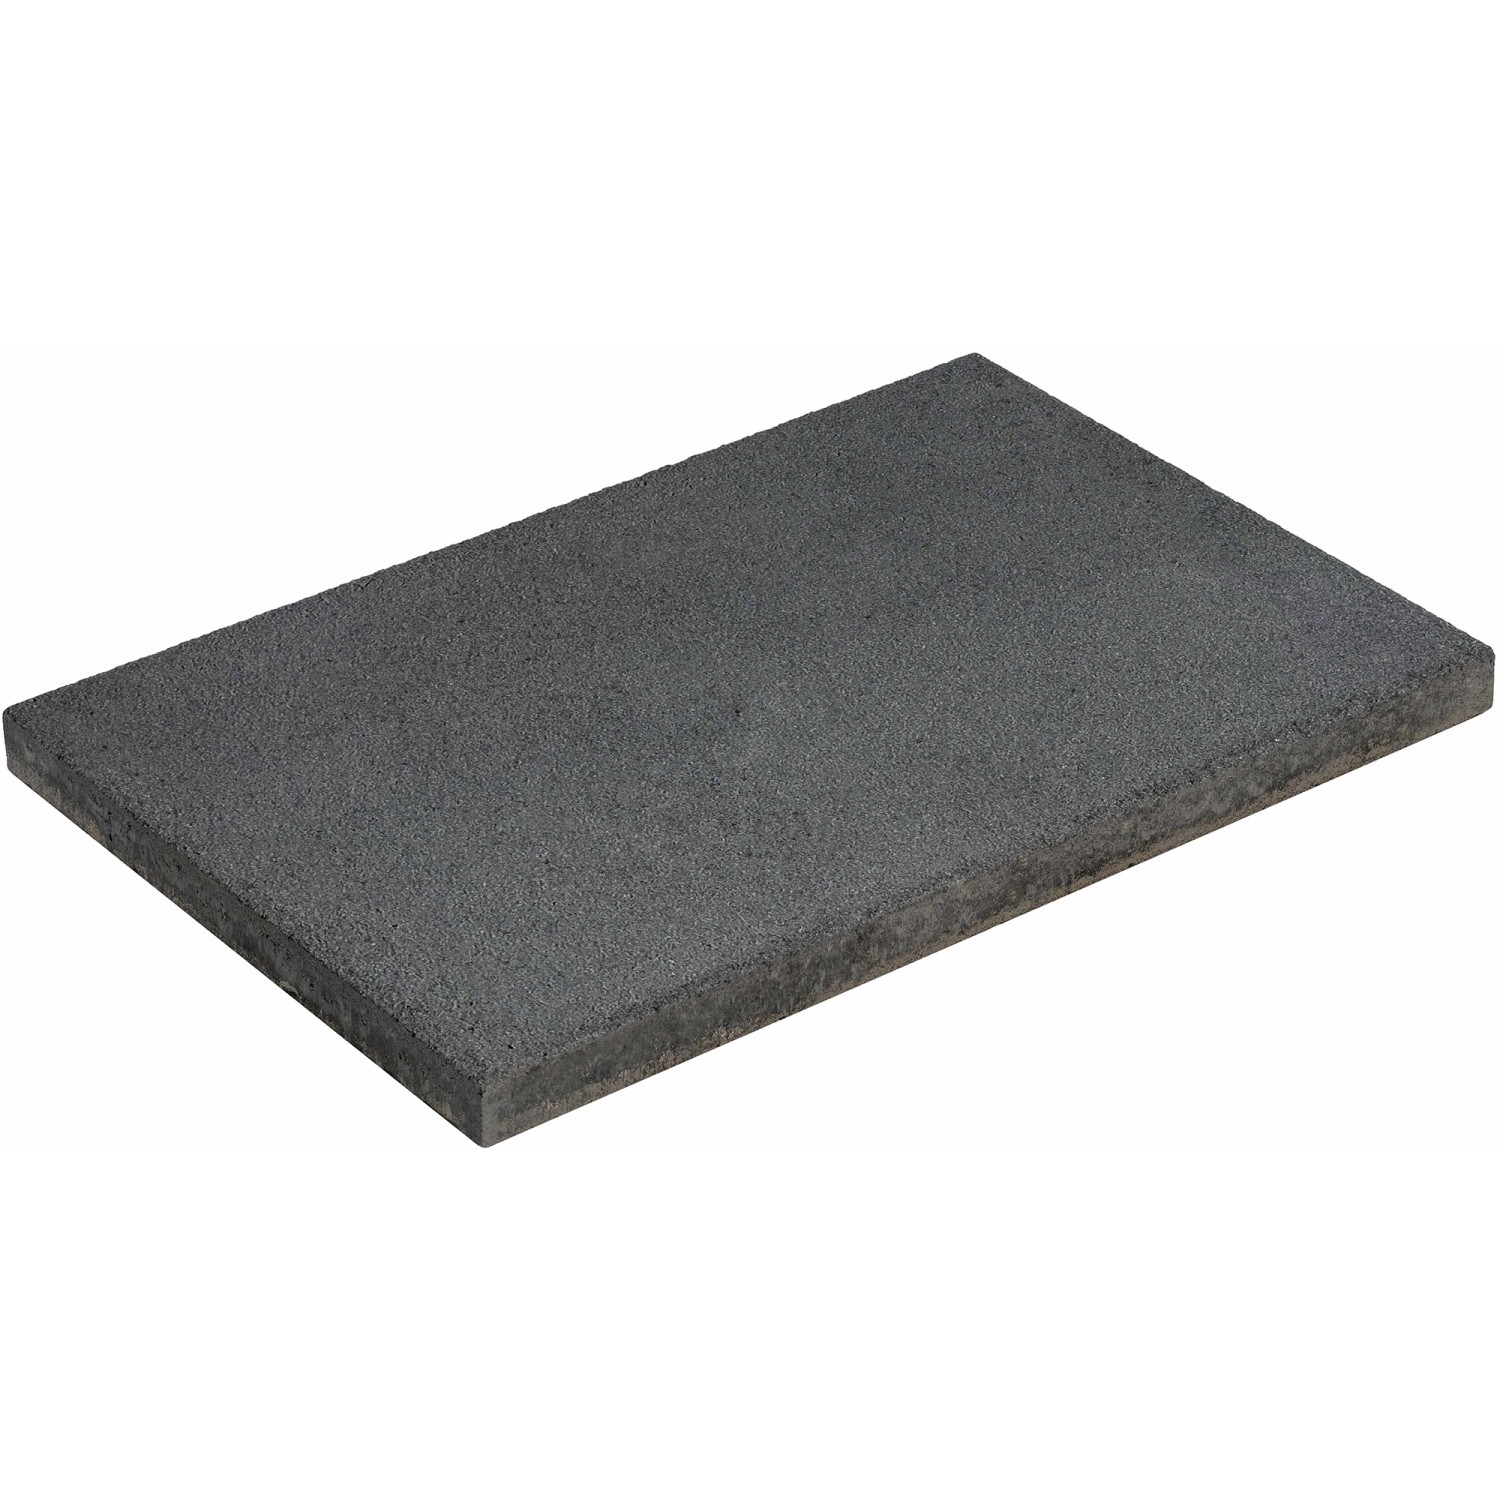 Diephaus Terrassenplatte Rustic Schwarz-Basalt 60 cm x 40 cm x 4 cm von Diephaus